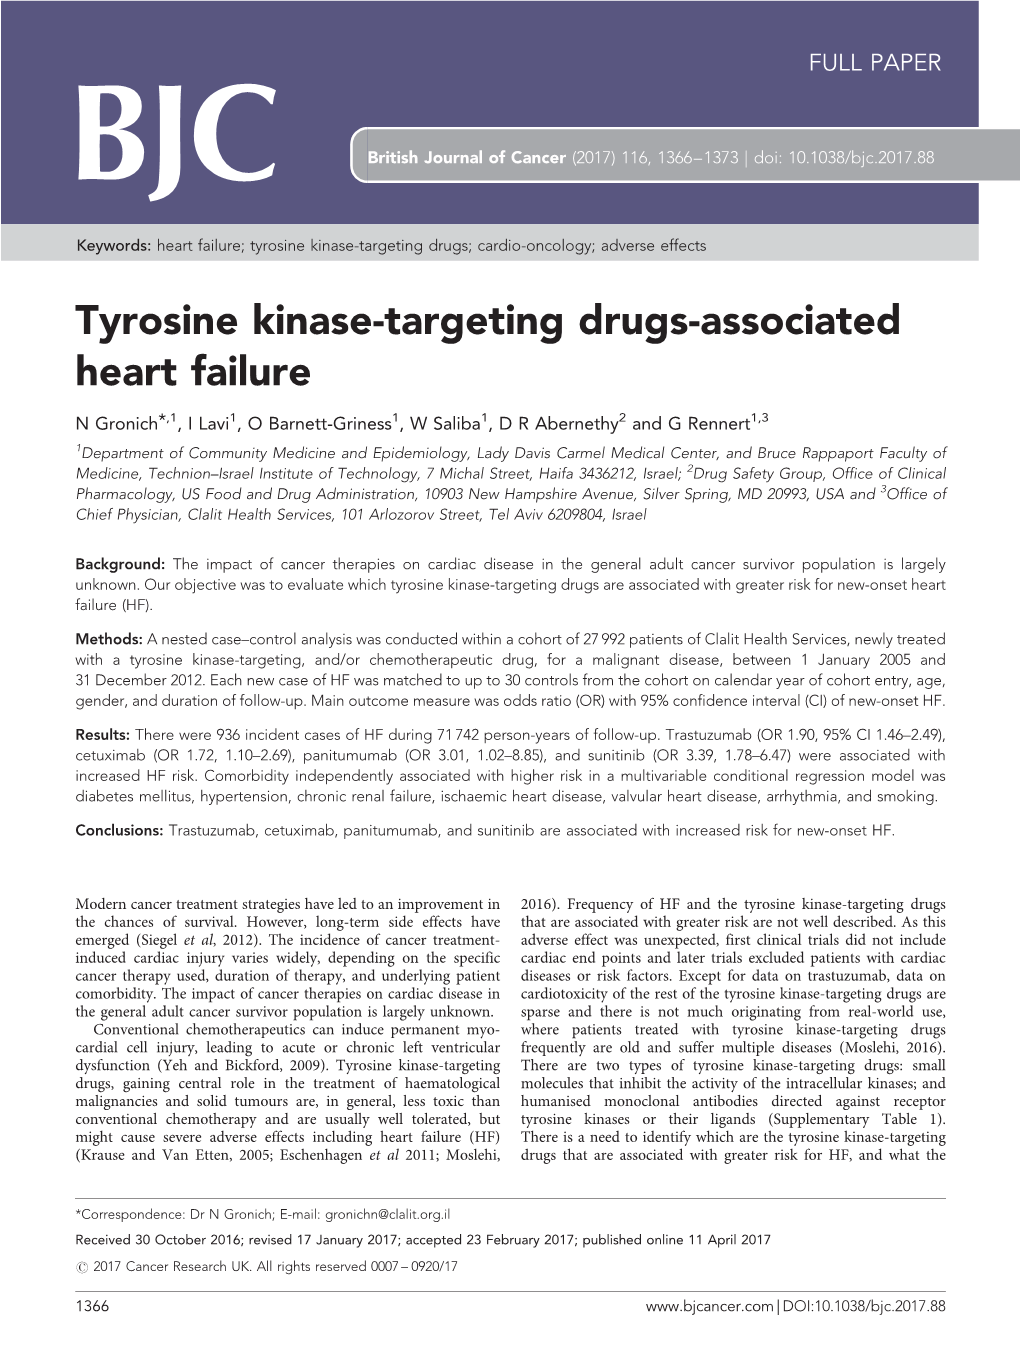 Tyrosine Kinase-Targeting Drugs-Associated Heart Failure